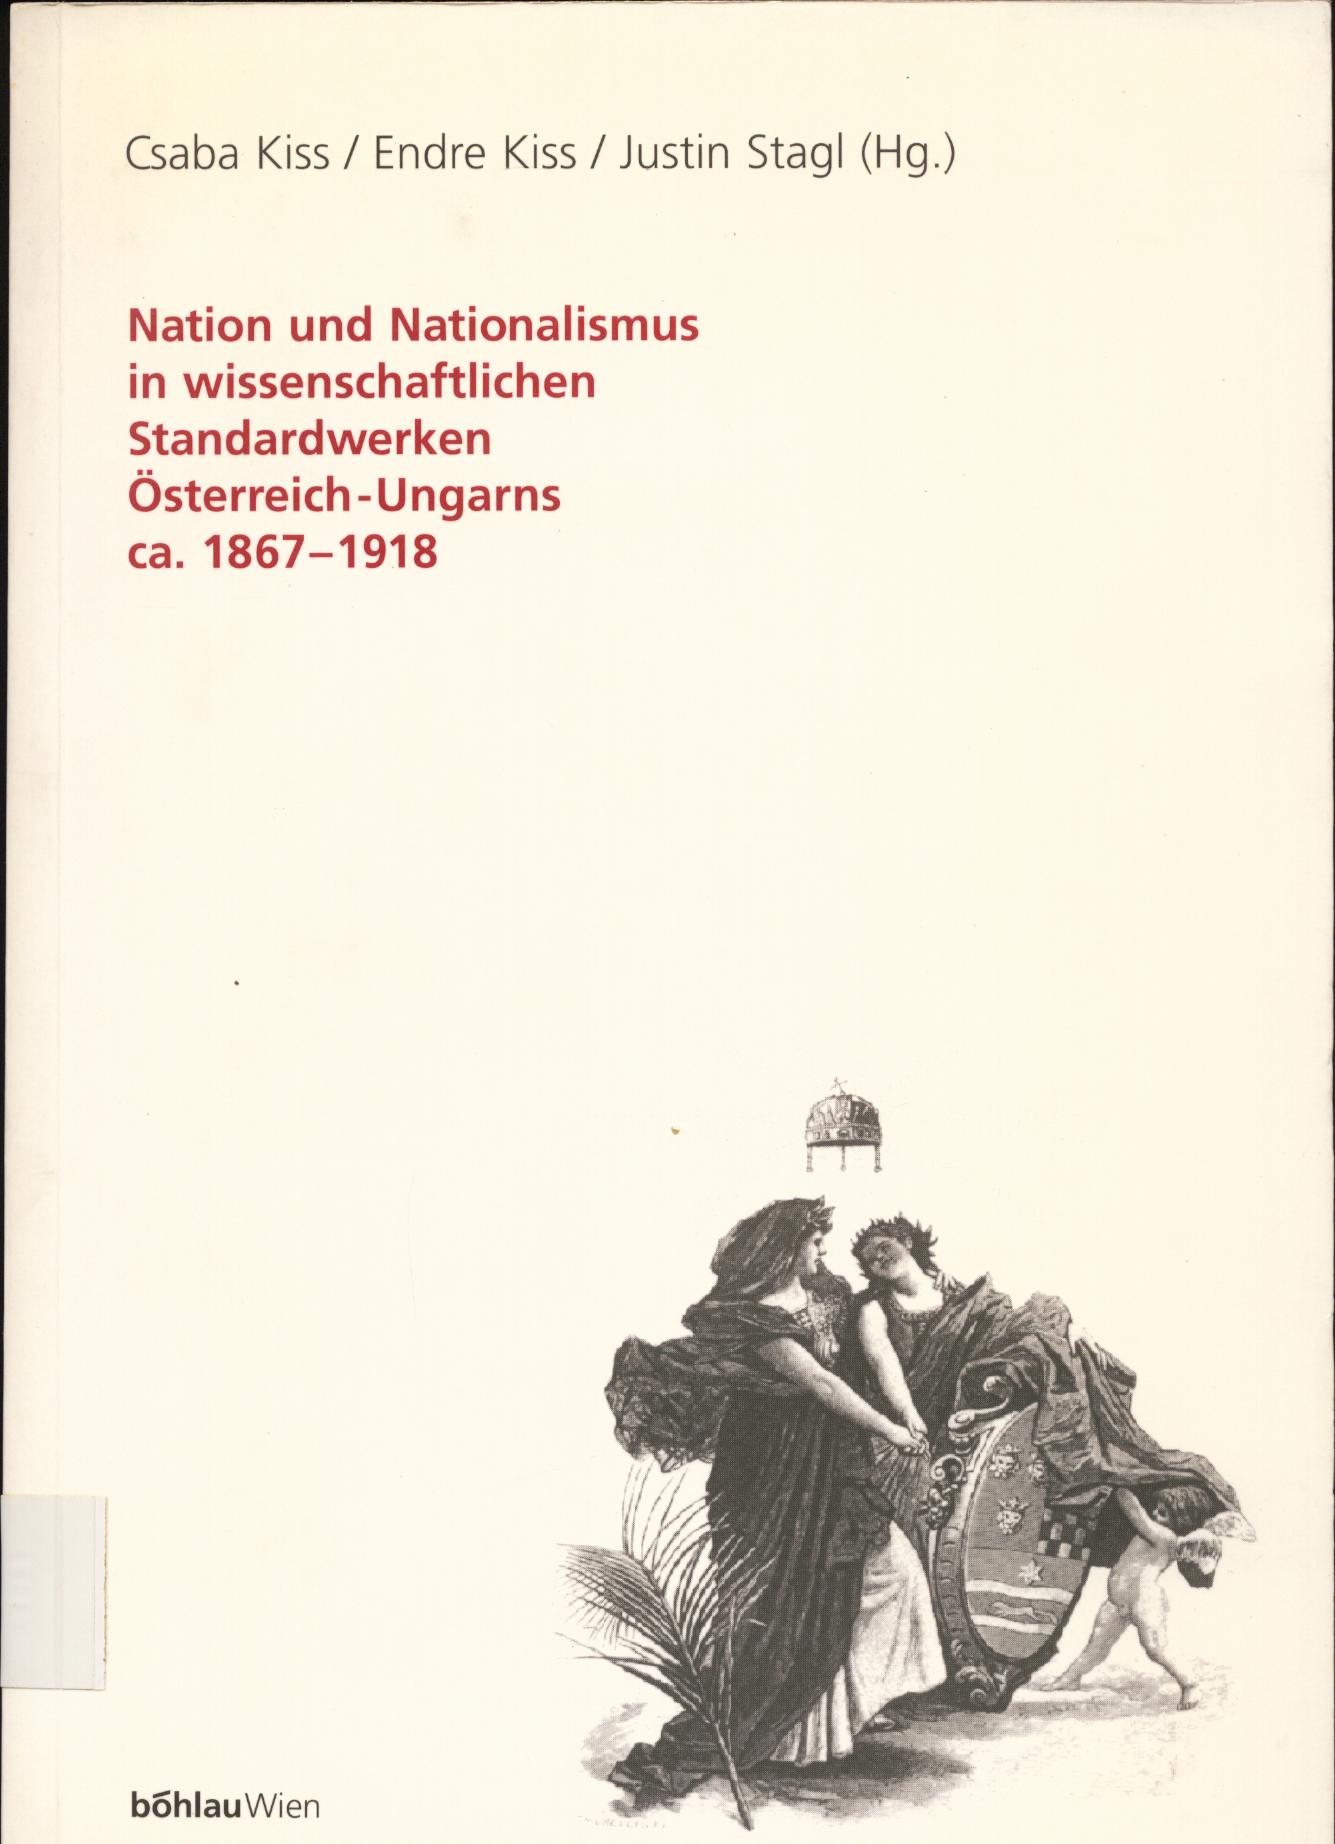 Nation und Nationalismus in wissenschaftlichen Standardwerken Österreich-Ungarns ca. 1867-1918 - Kiss, Endre, Csaba Kiss und Justin Stagl